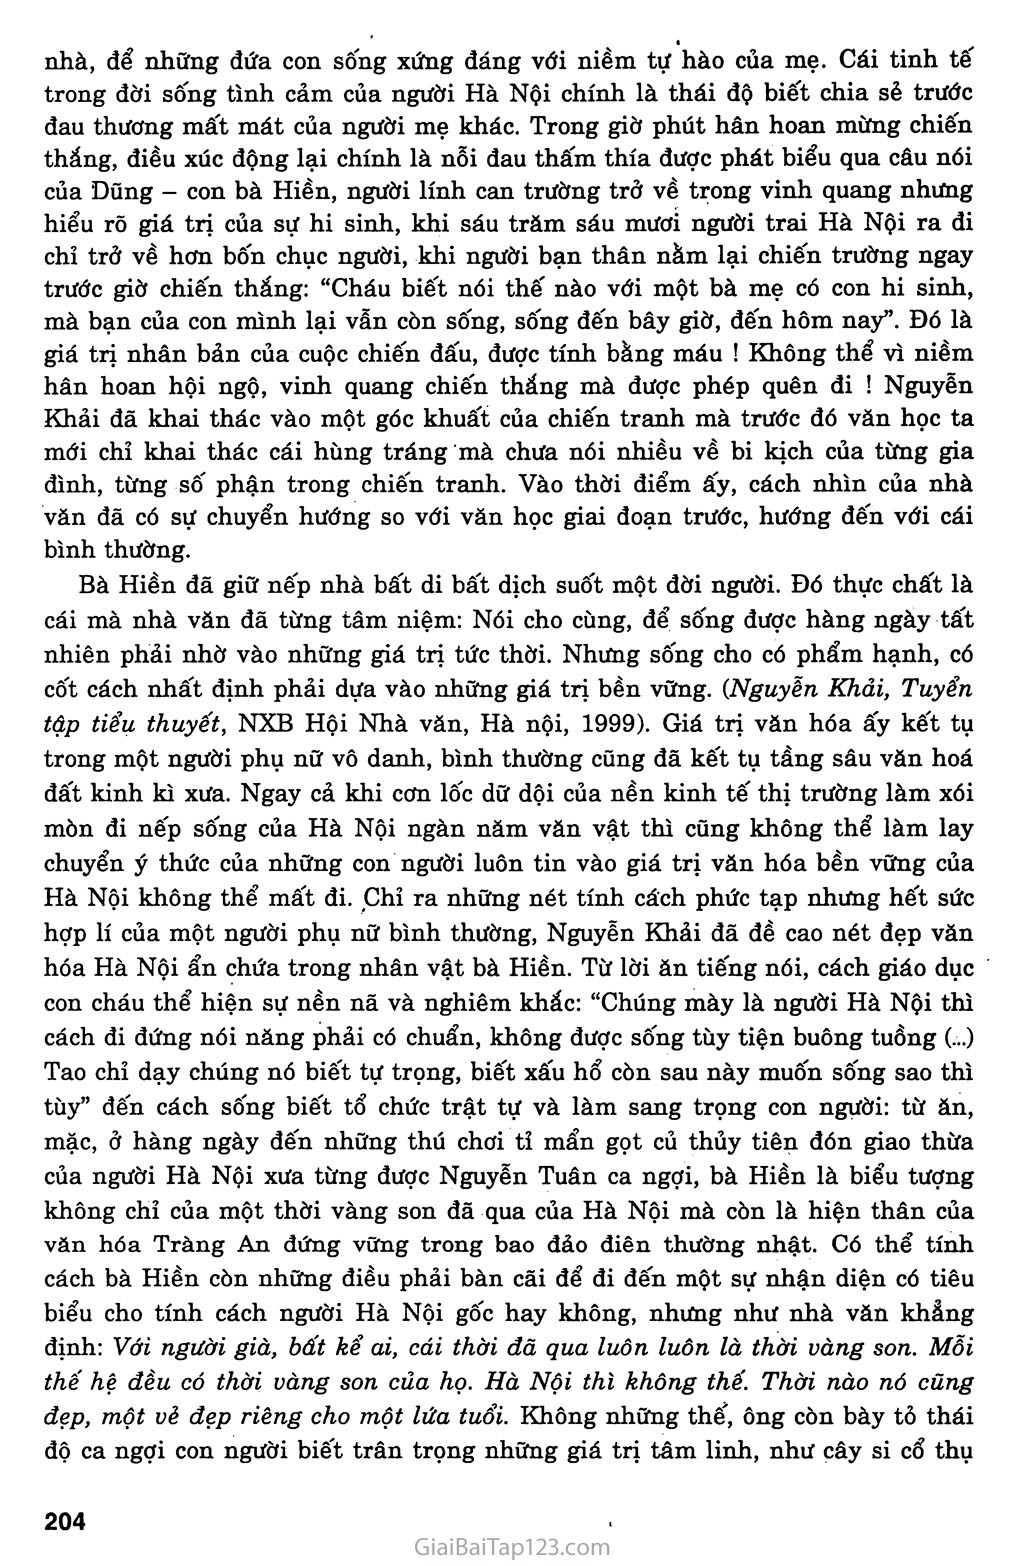 Một người Hà Nội (Nguyễn Khải, 1990) trang 9